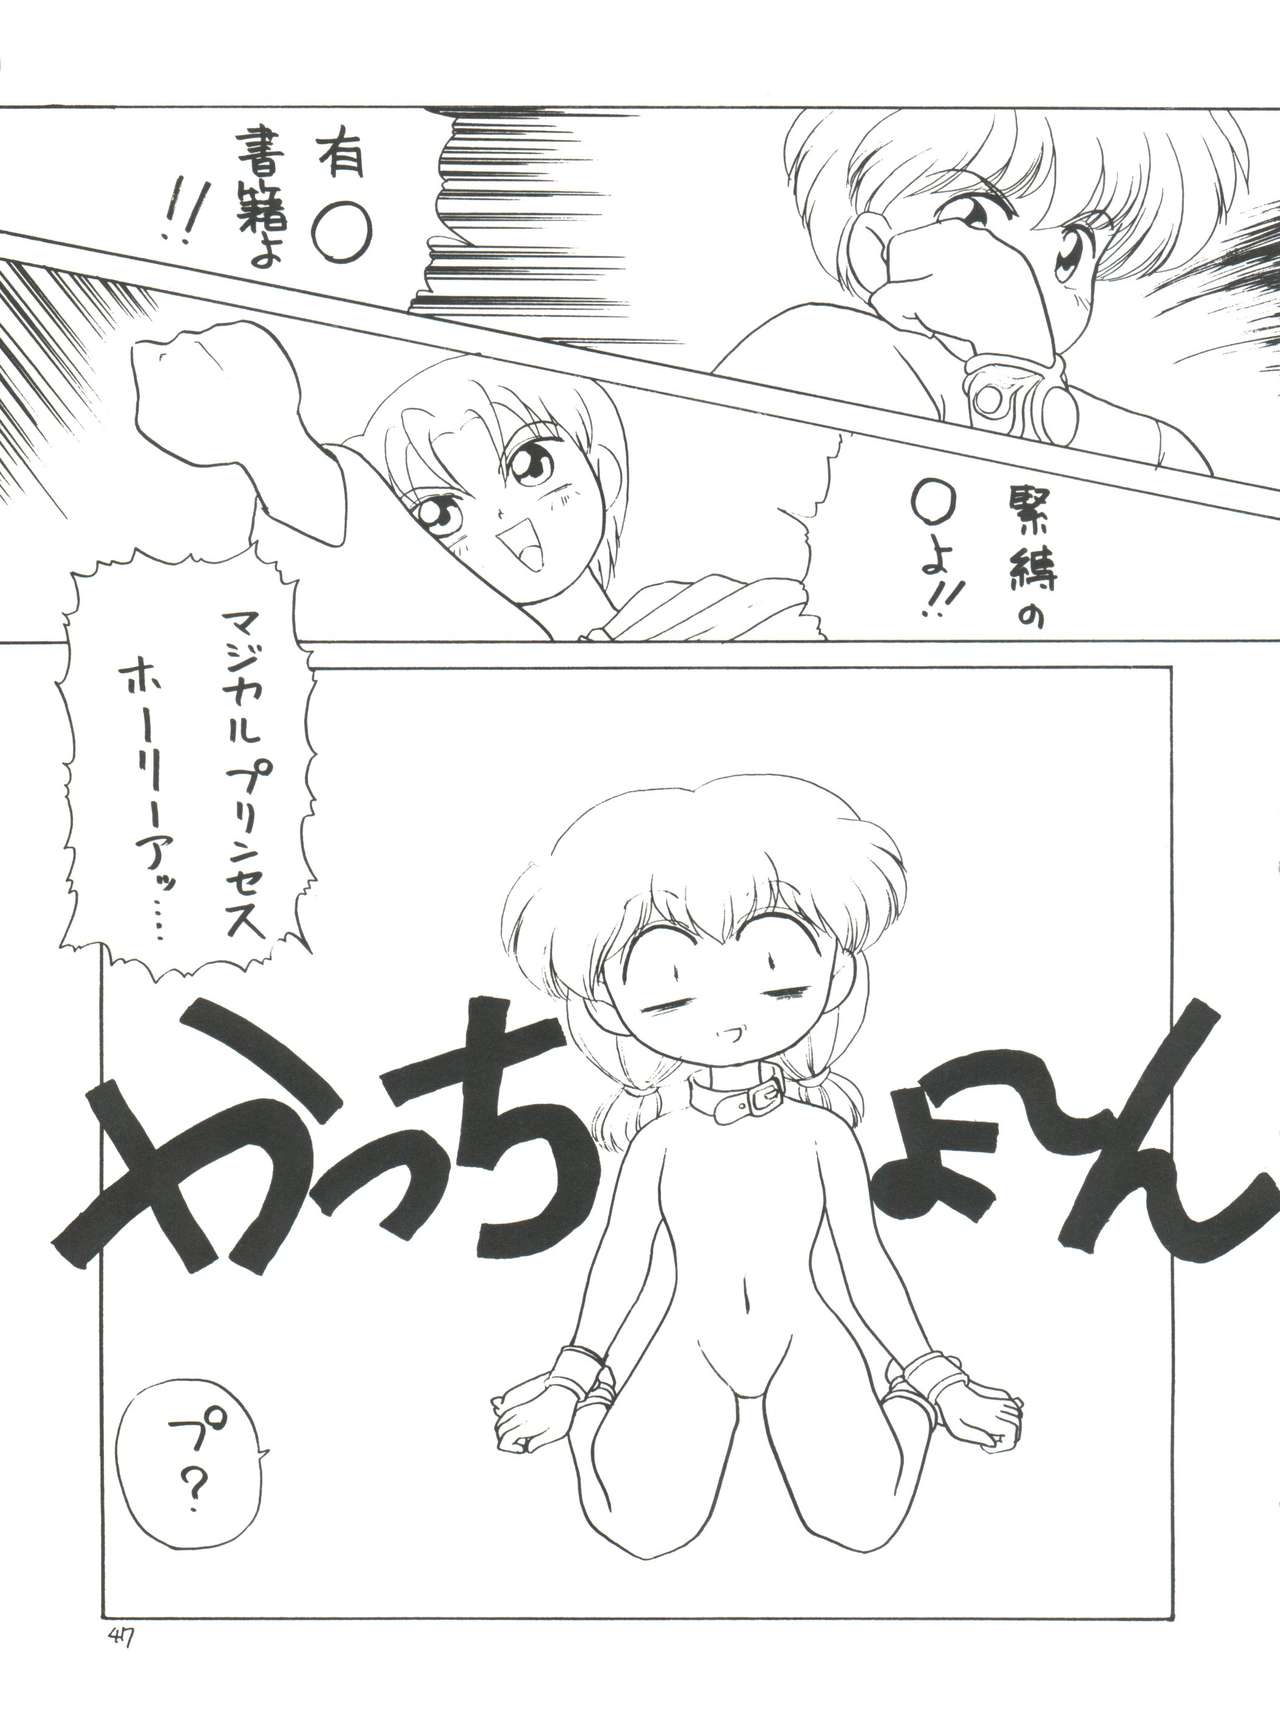 [Momo no Tsubomi (Various)] Lolikko LOVE 4 (Various) page 47 full